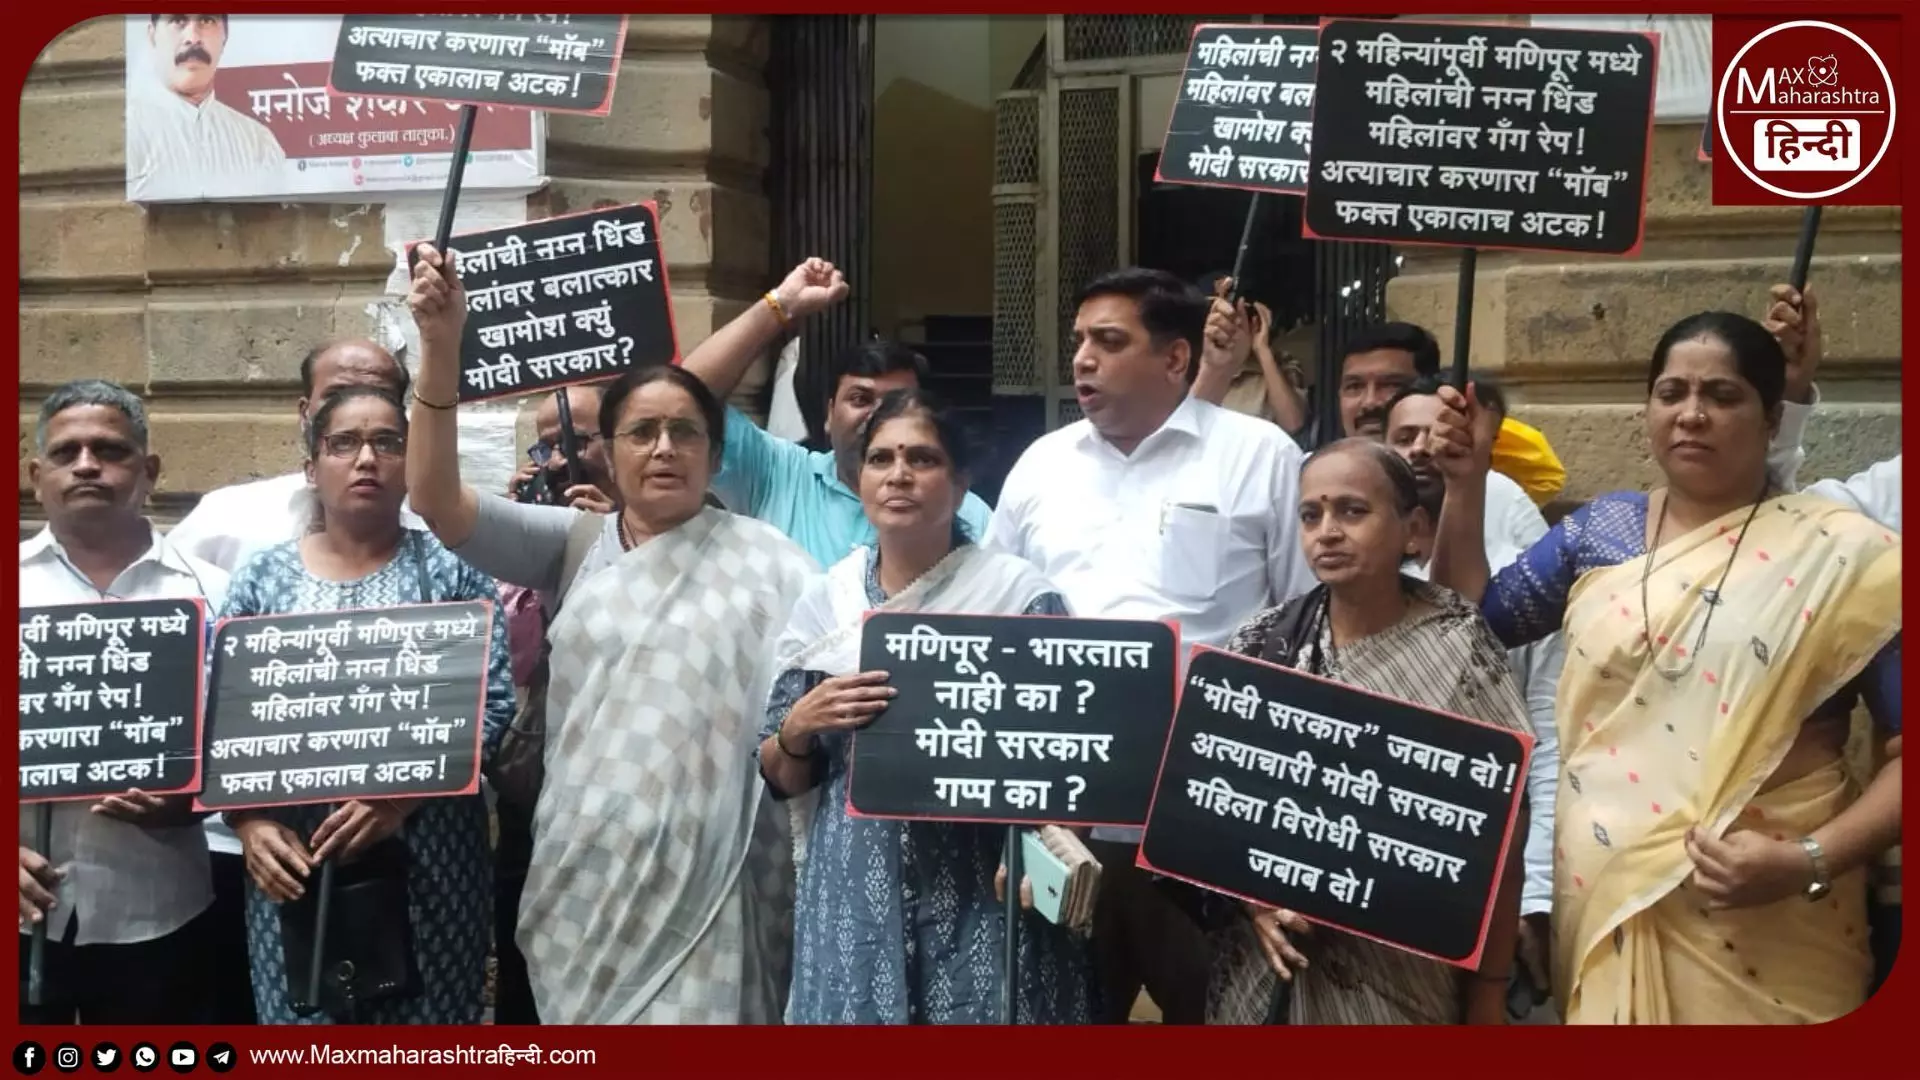 राष्ट्रवादी महिला कांग्रेस ने मुंबई में विरोध प्रदर्शन कर, मणिपुर में महिलाओं पर हो रहे अत्याचार का किया पुरजोर विरोध